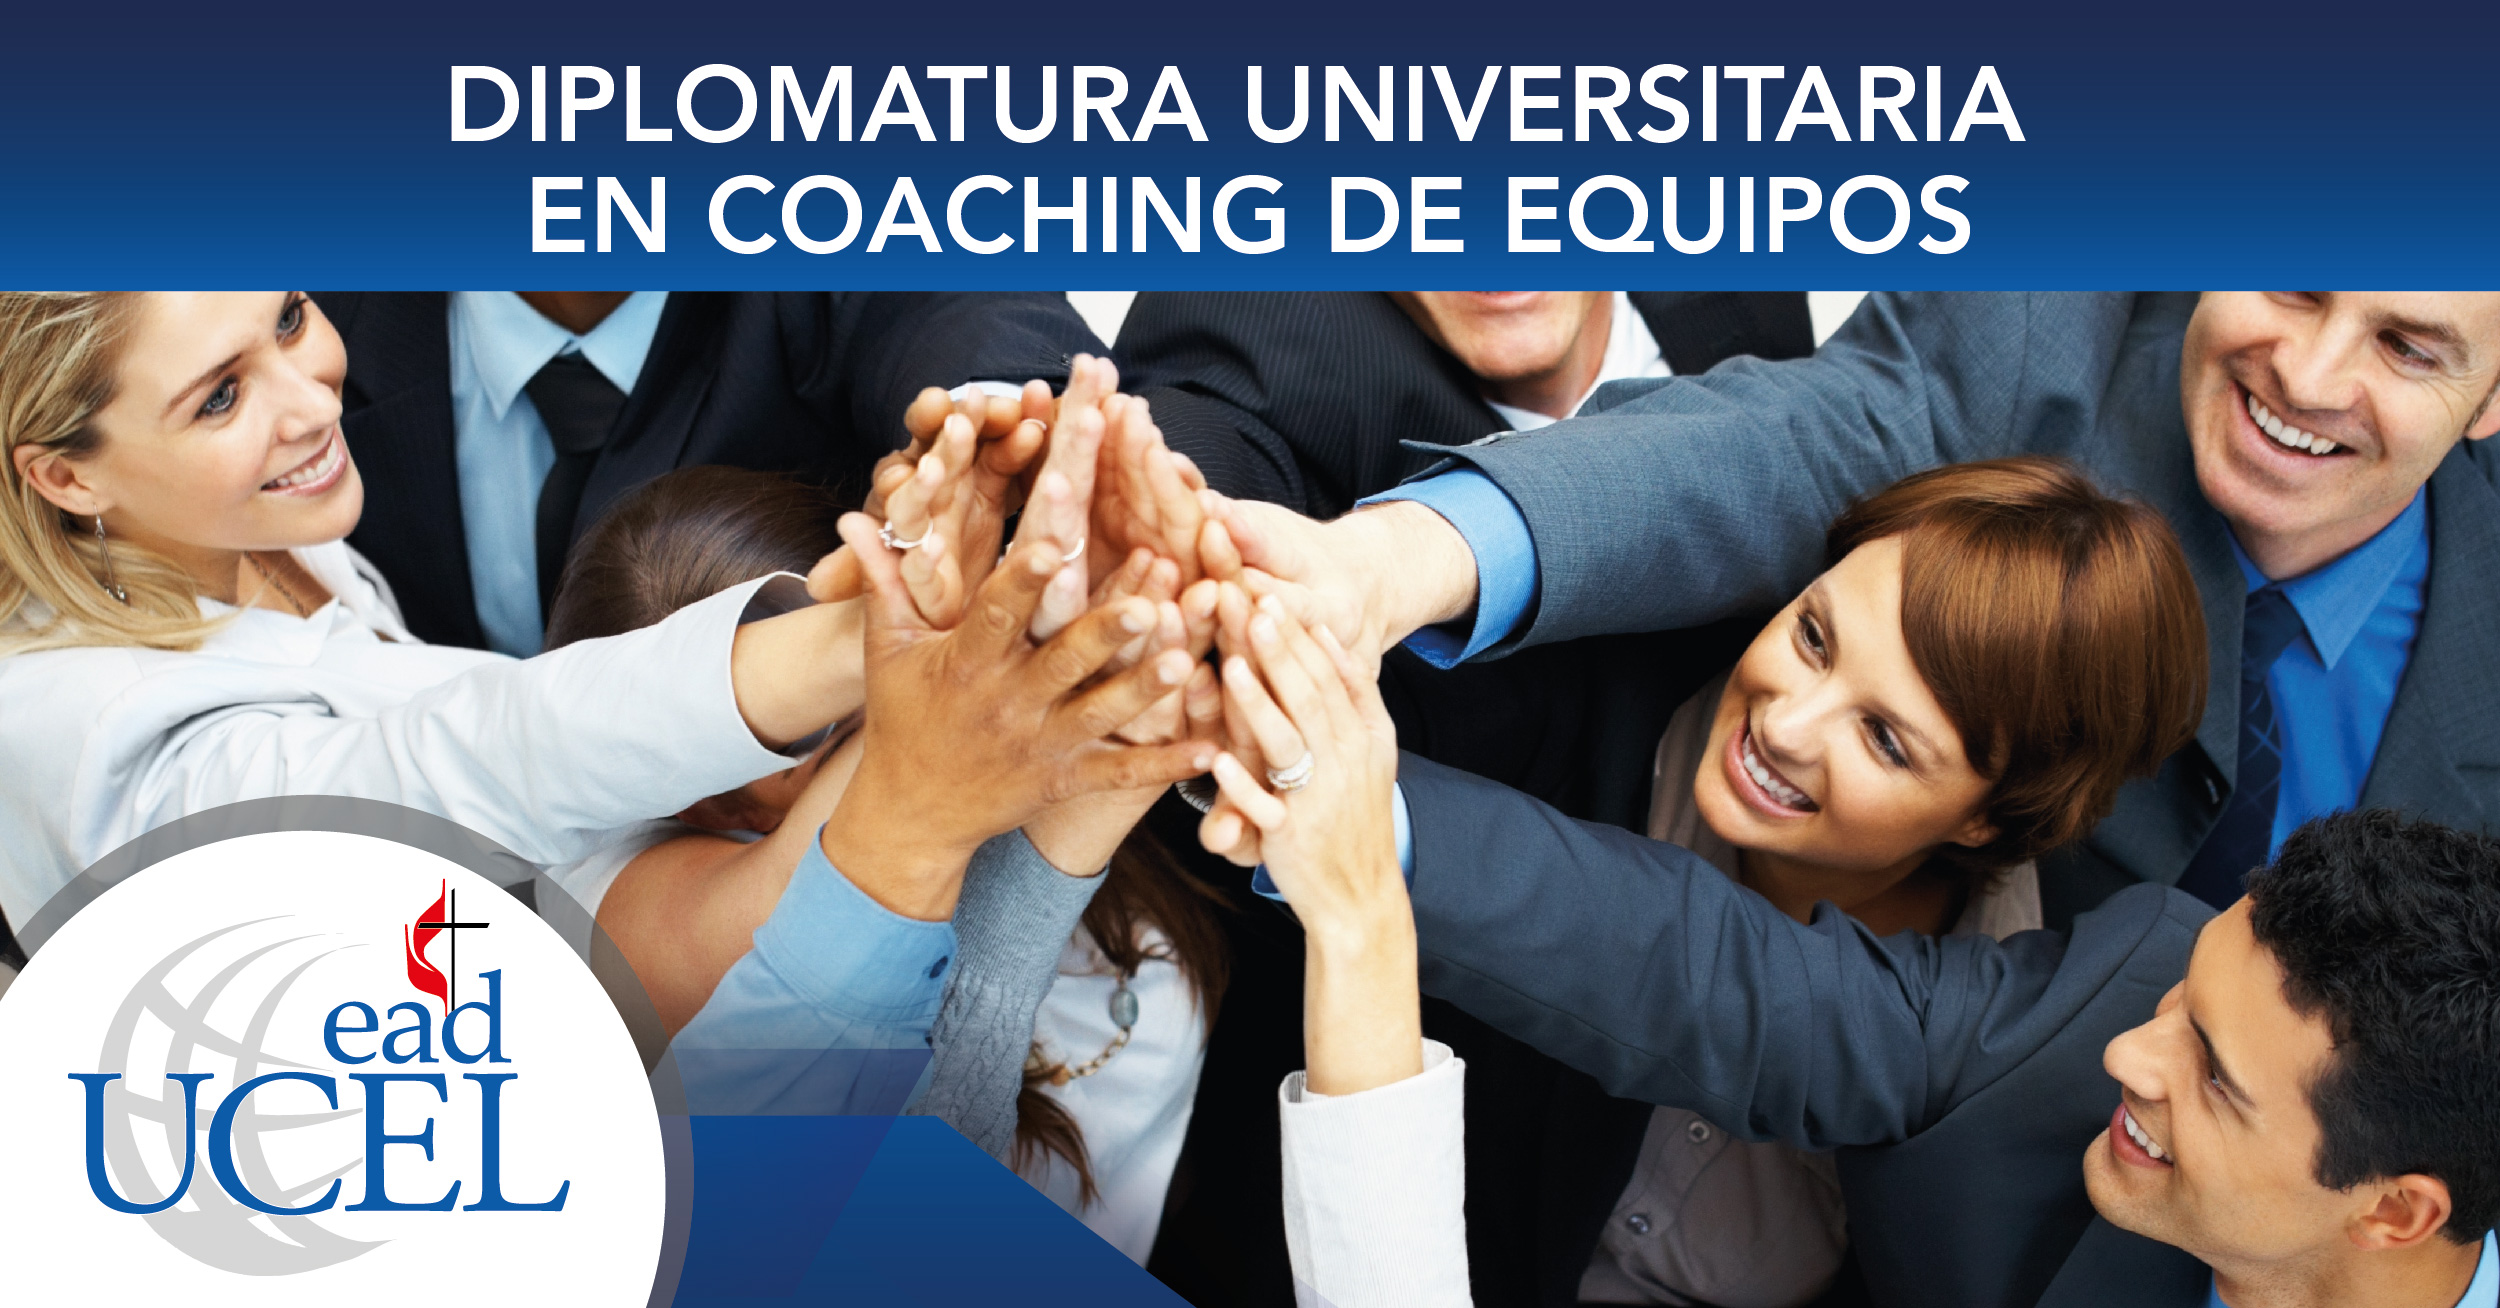 Diplomatura Universitaria en Coaching de Equipos 2019 02